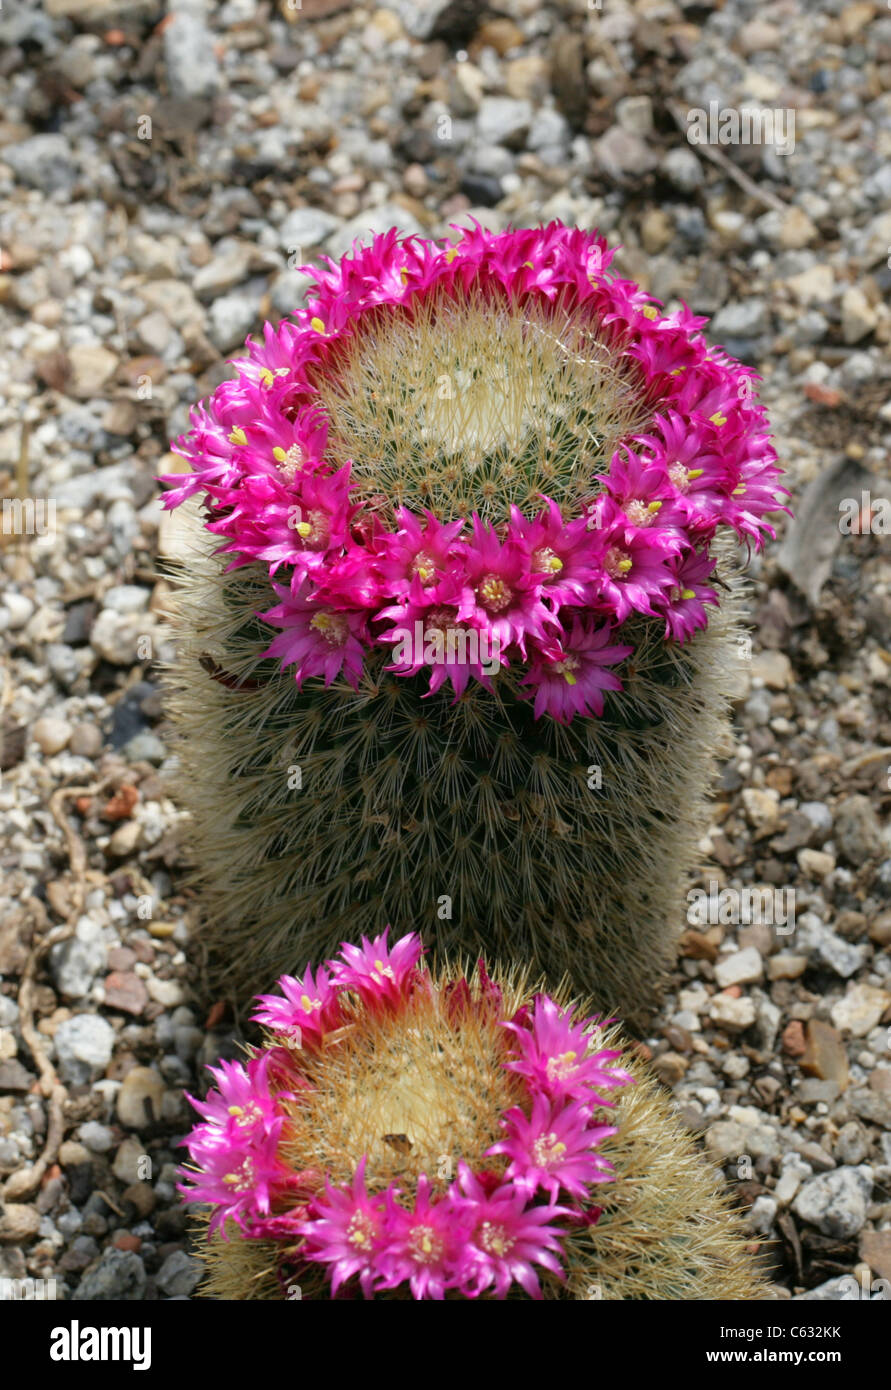 Cactus, Mammillaria nunezii subsp. bella, Cactaceae. Mexico. Stock Photo